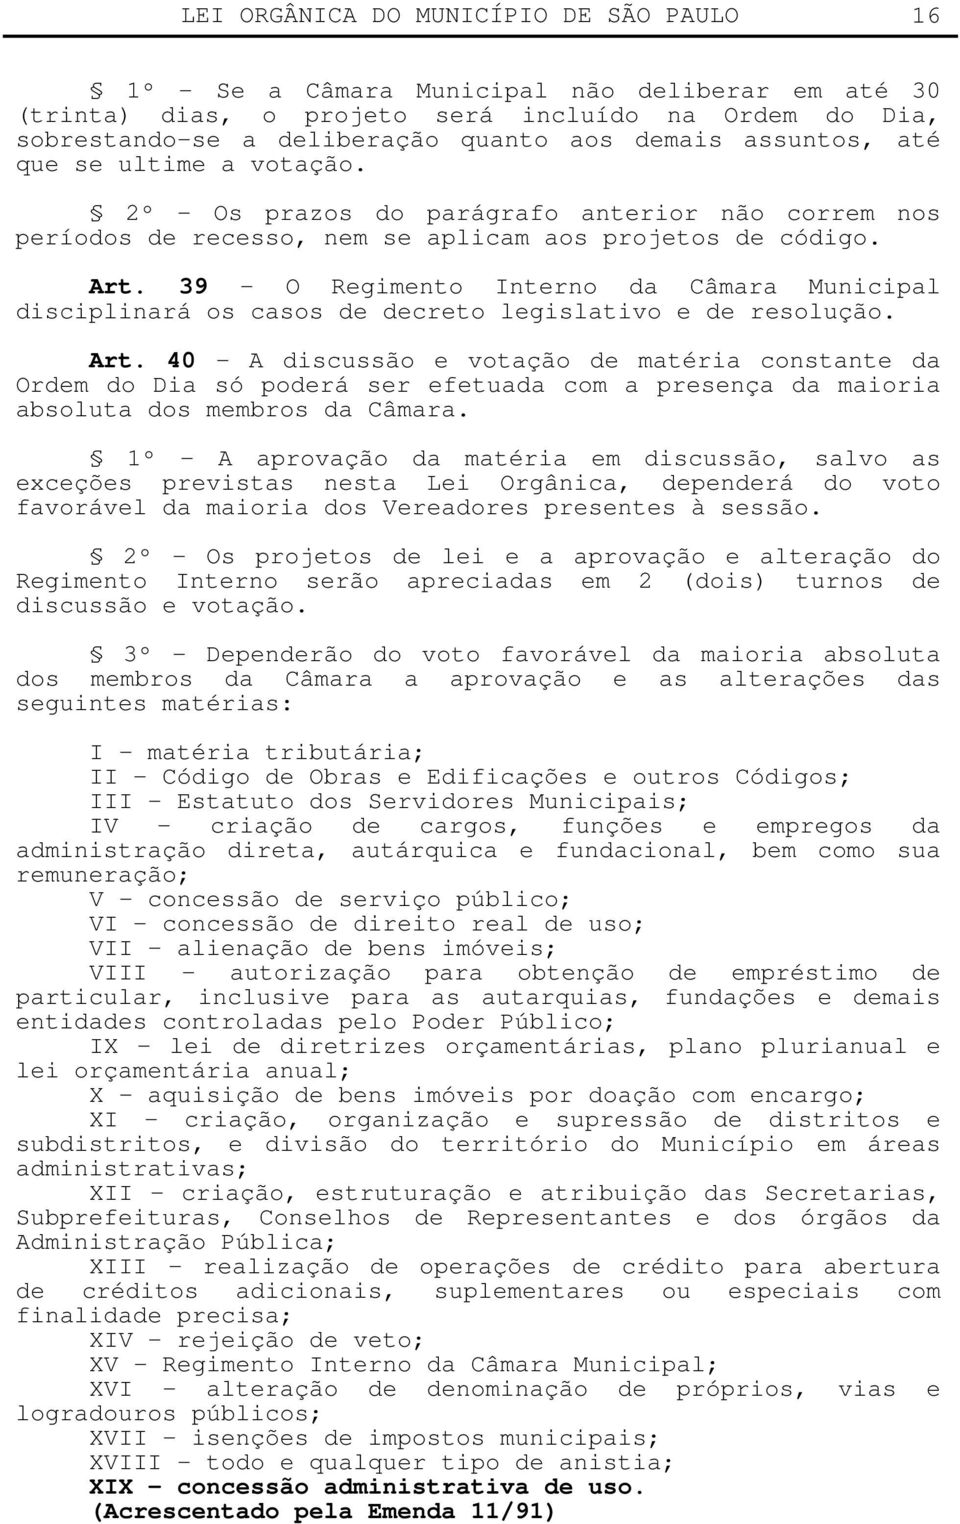 39 - O Regimento Interno da Câmara Municipal disciplinará os casos de decreto legislativo e de resolução. Art.